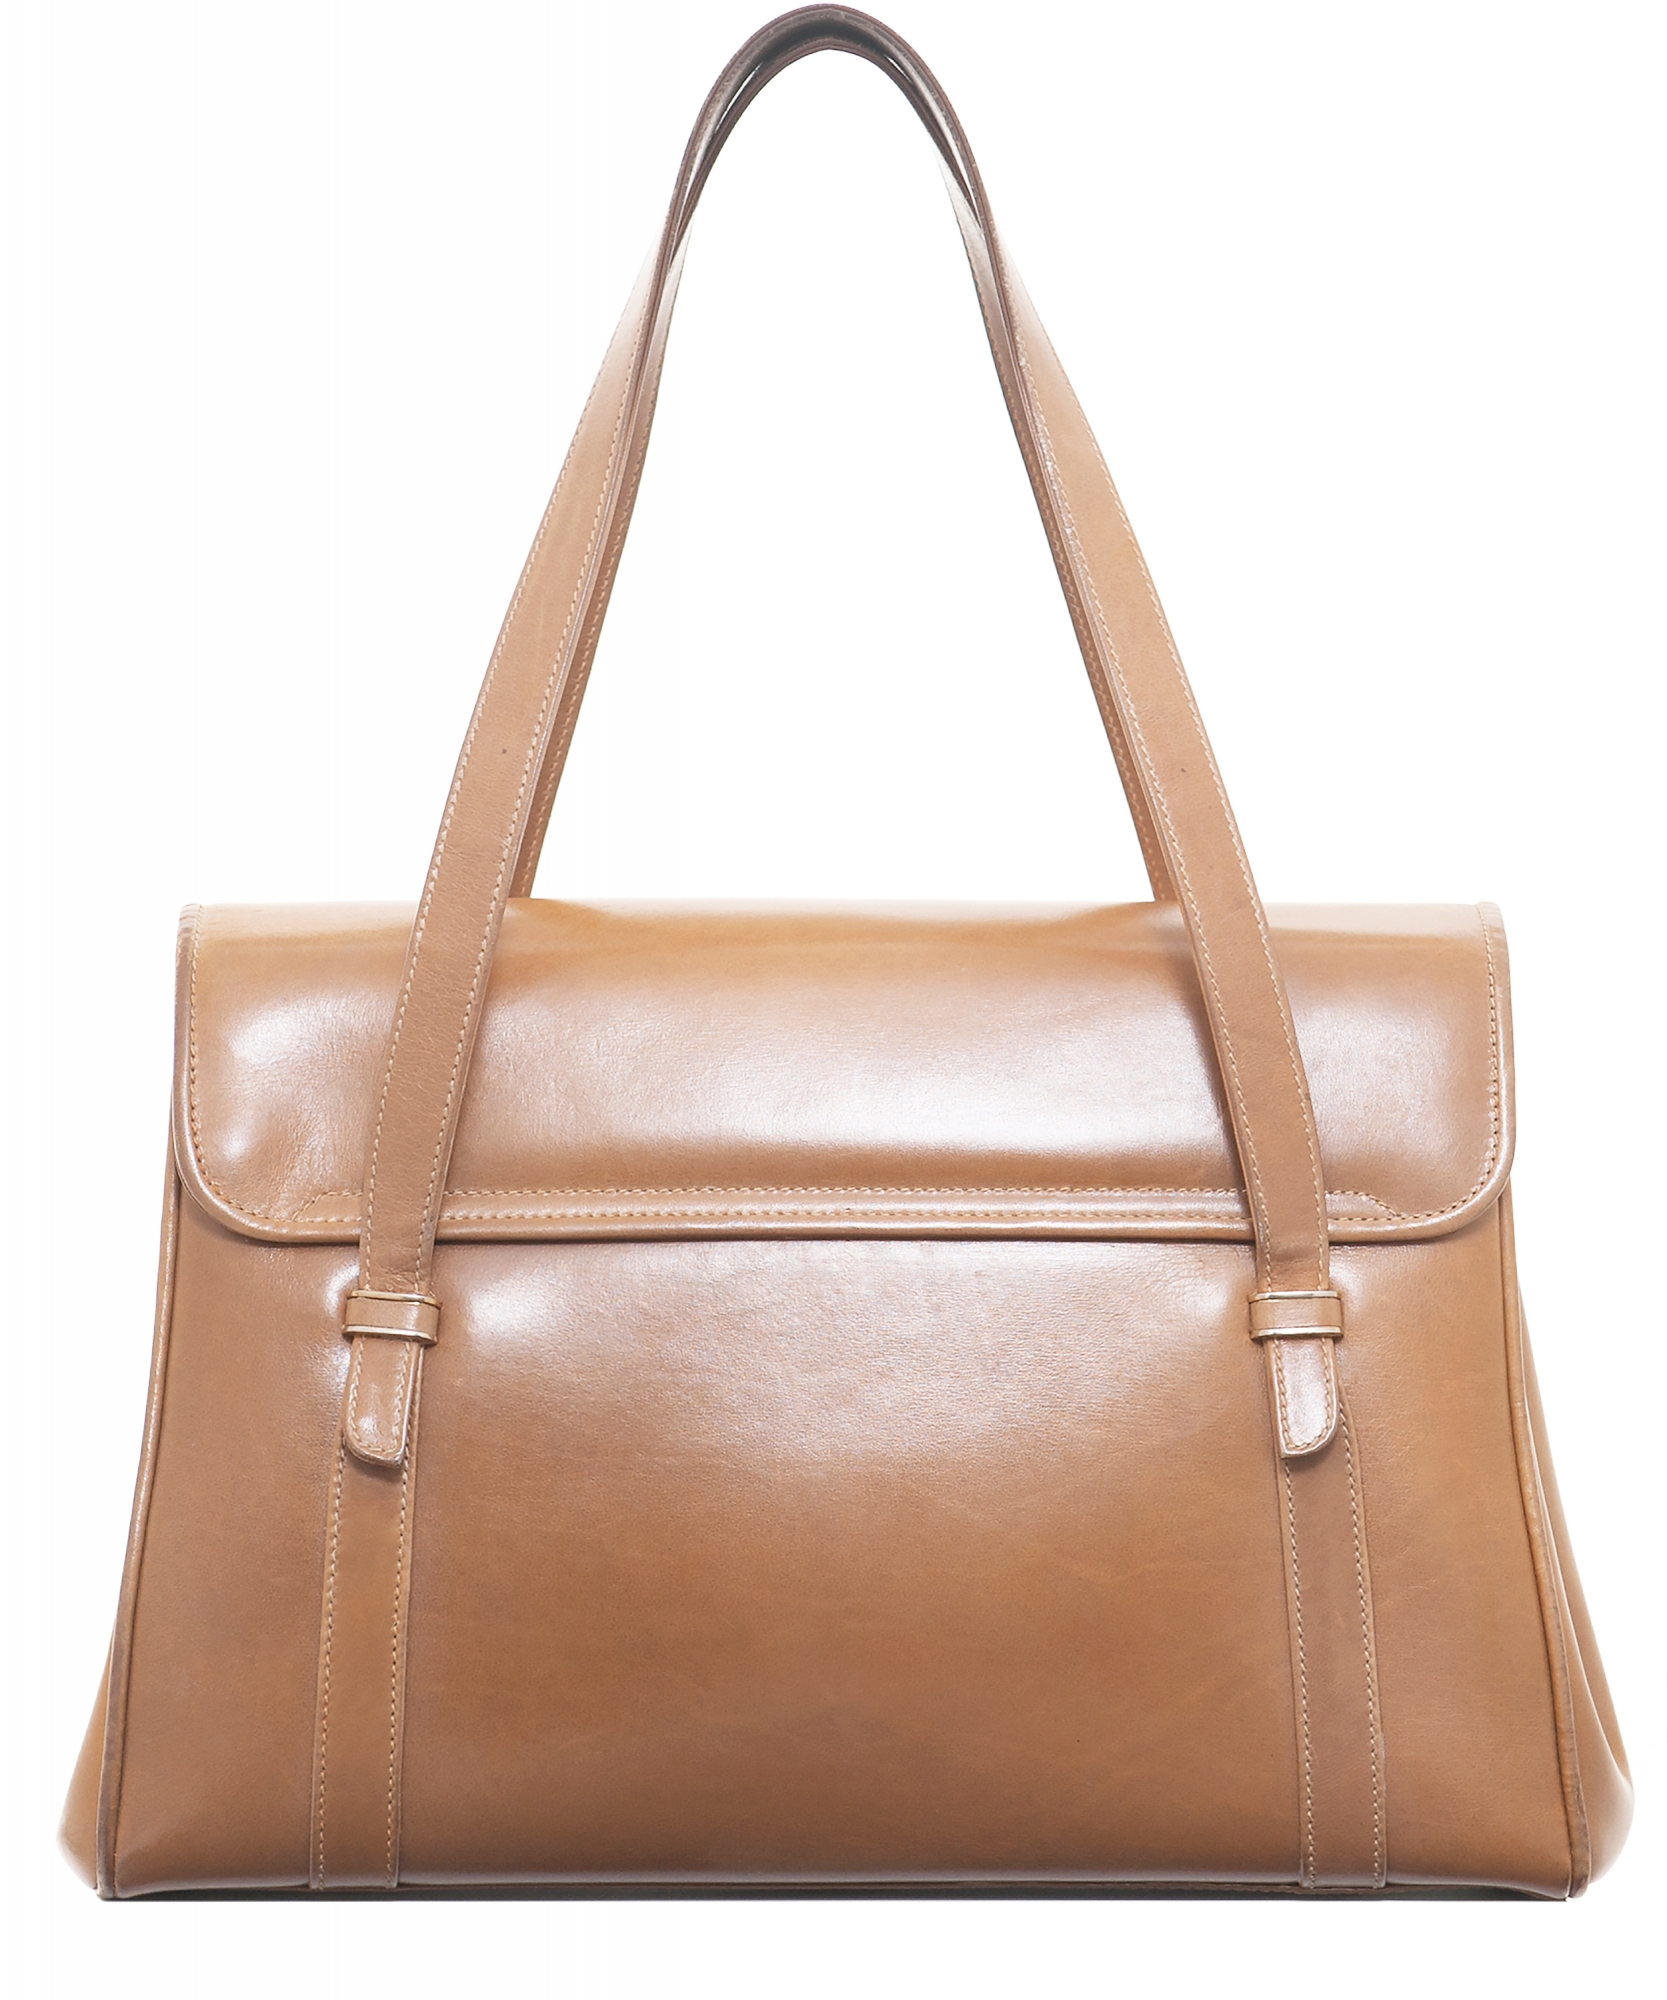 Authentic Vintage GUCCI Shoulder Tote Bag PVC Leather Brown Beige D4662  3902061